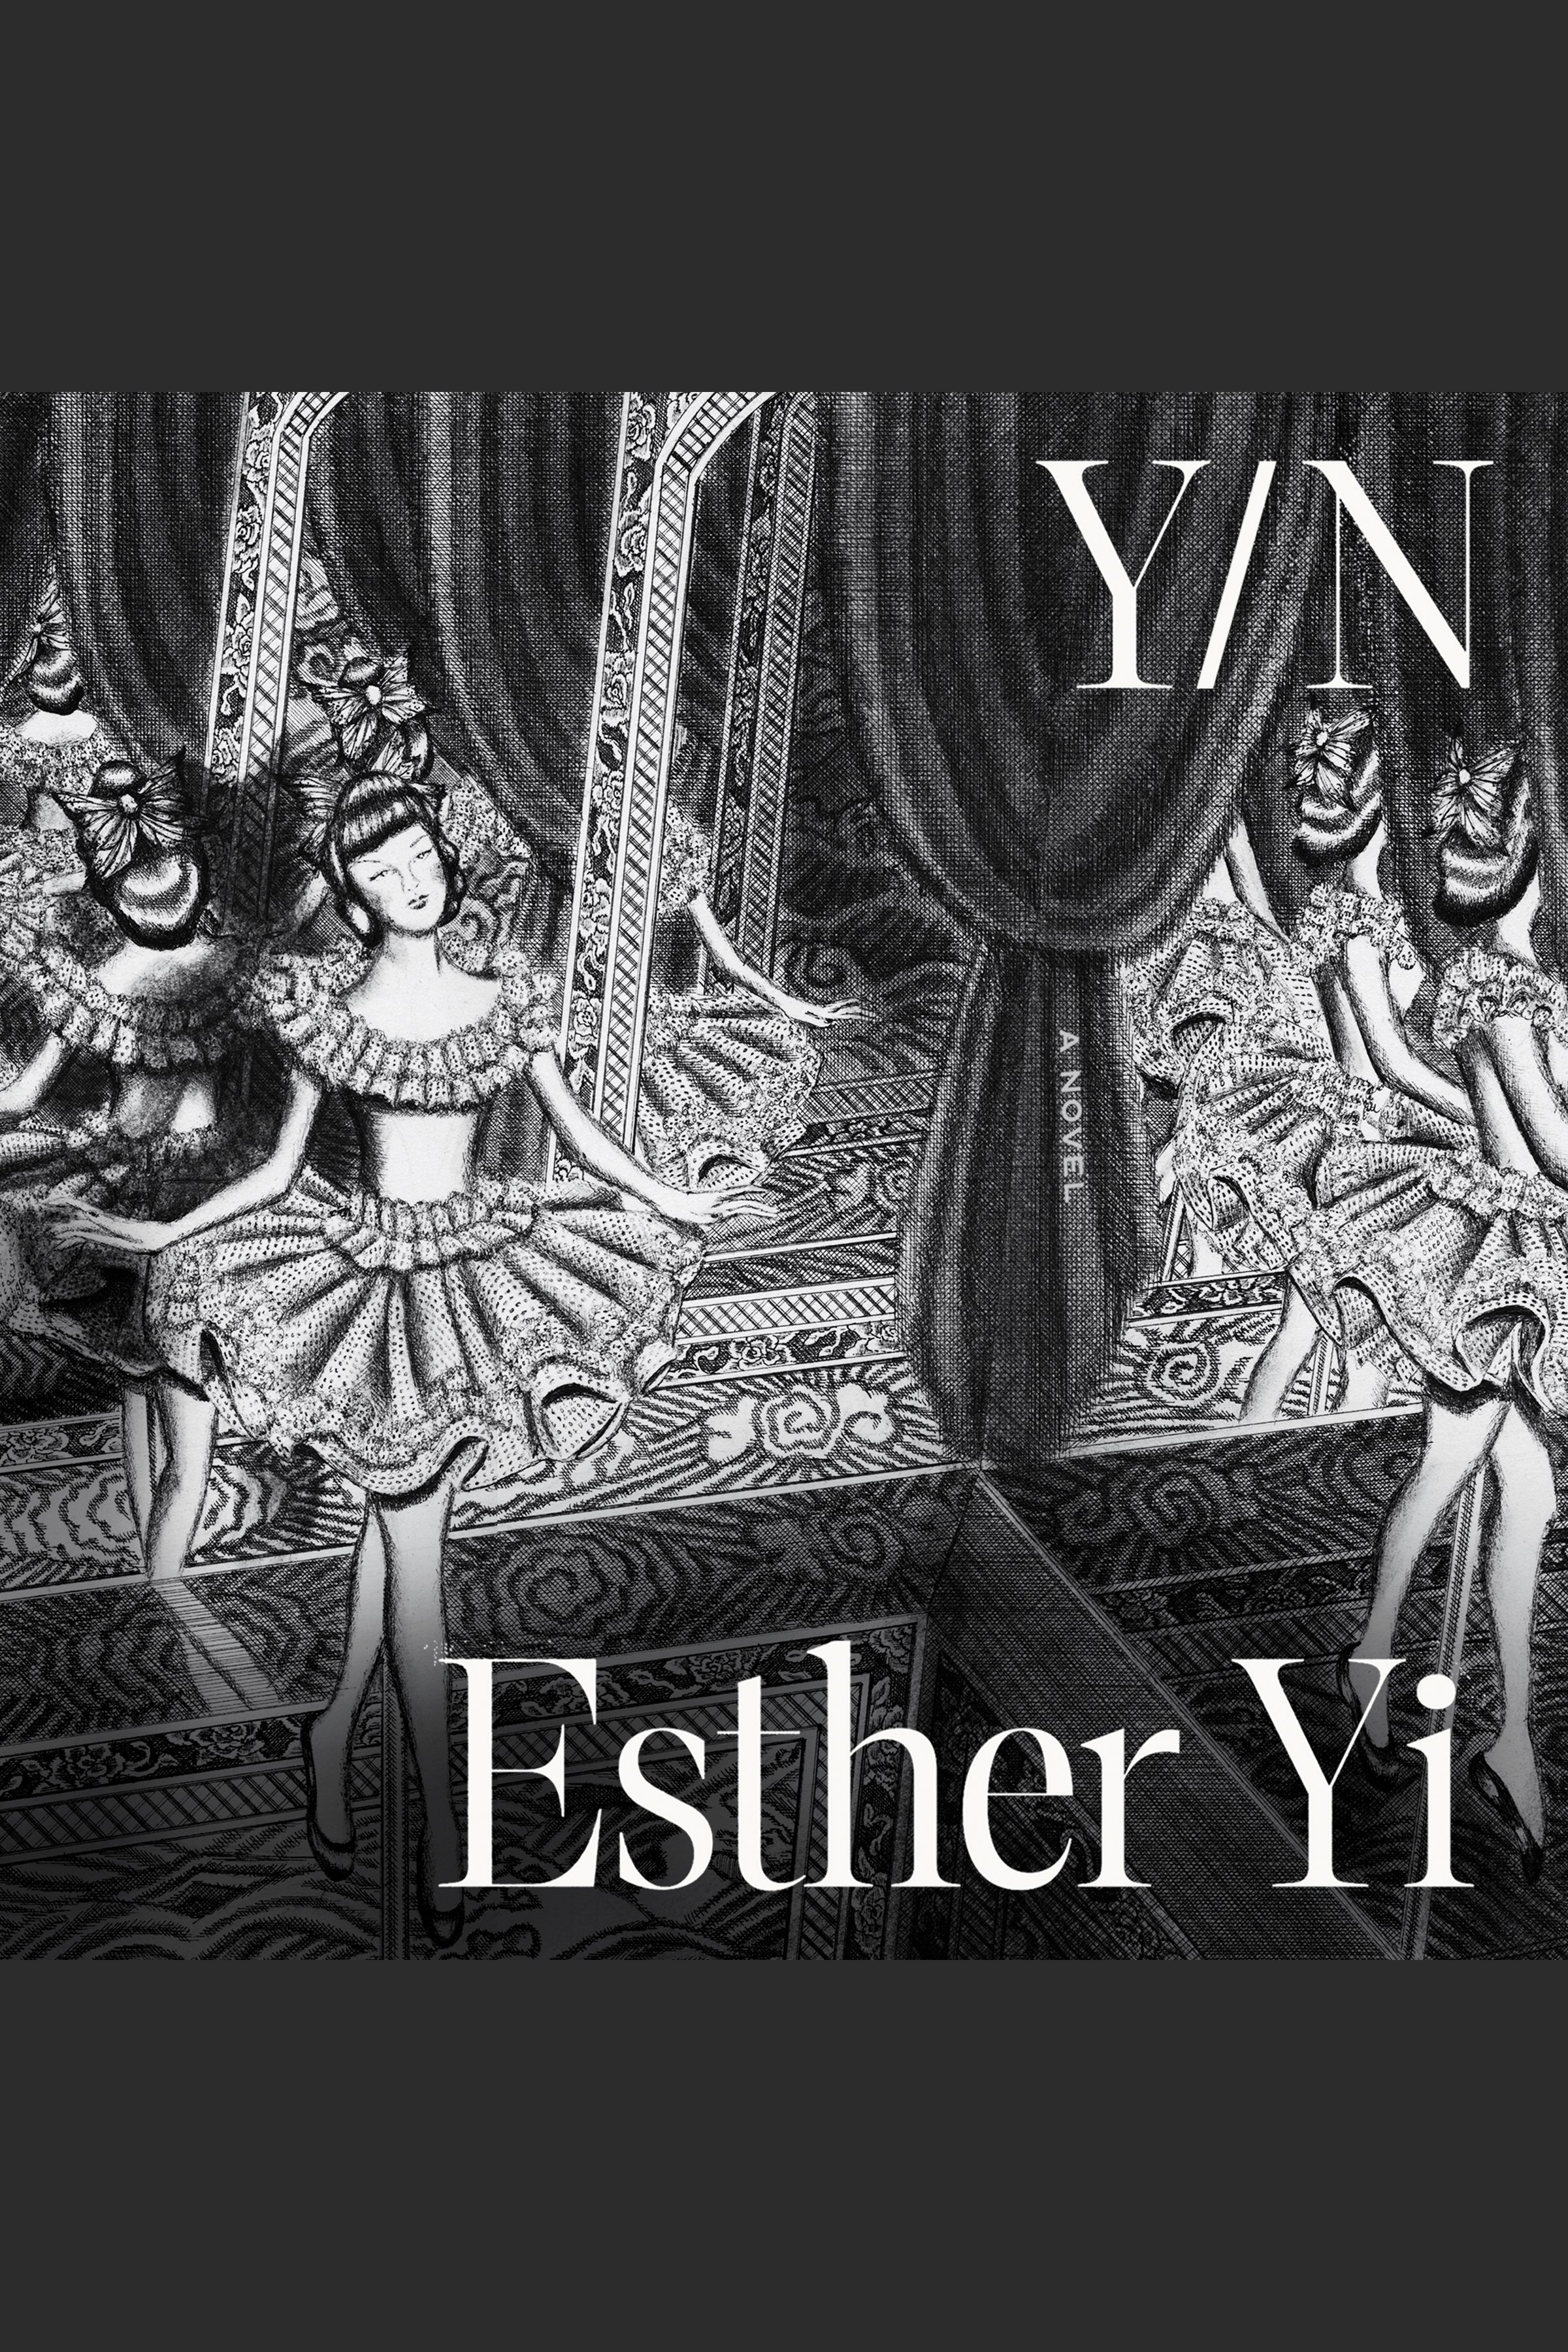 Y/N cover image